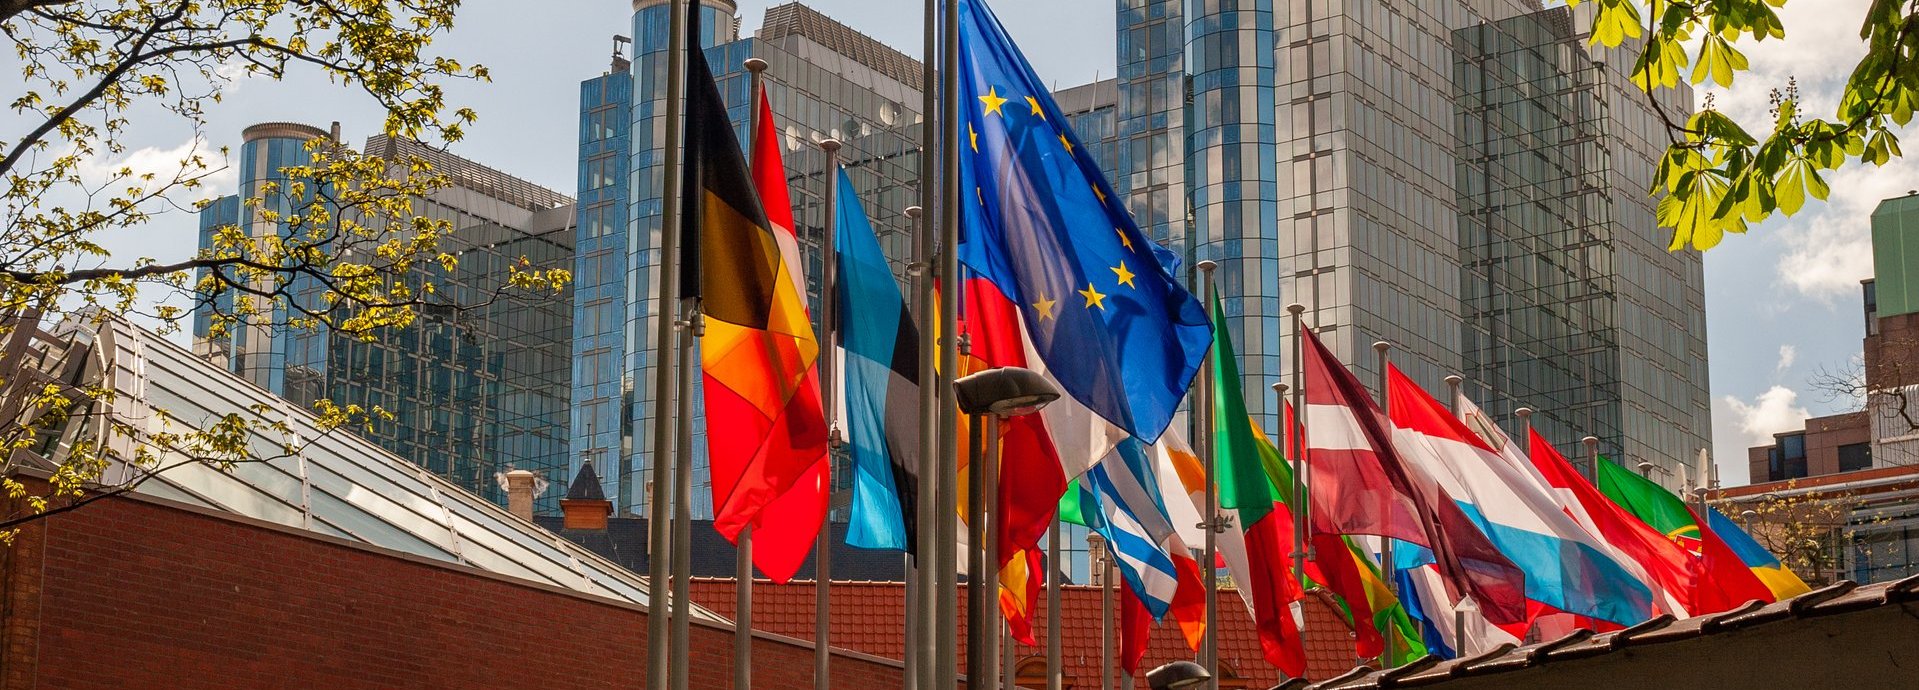 Paul Henri Spaak Gebäude im Hintergrund mit europäischen Flaggen und Ästen